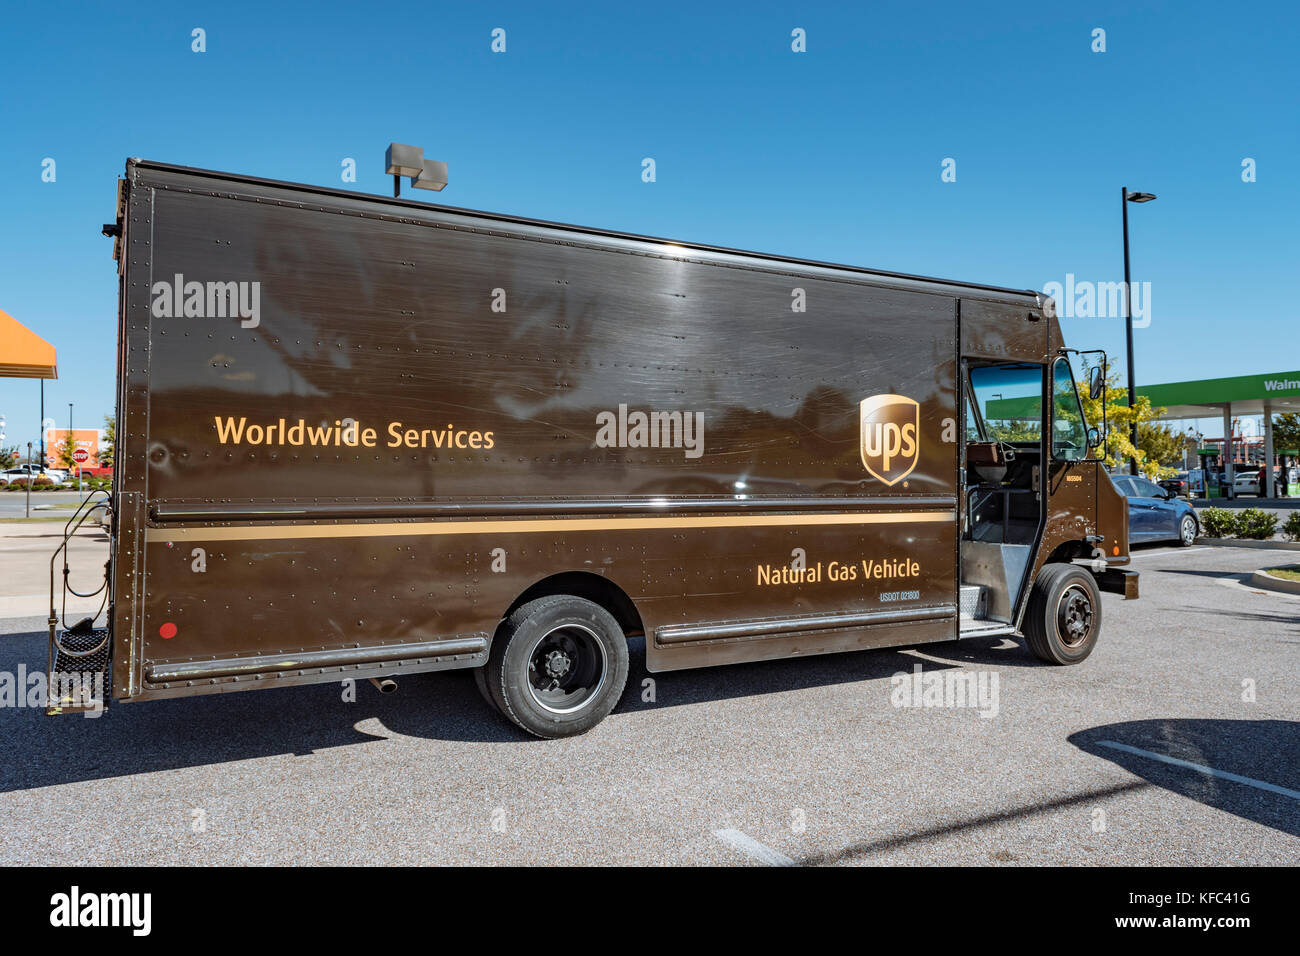 Un basso livello di emissioni UPS van o furgone per consegne che corre sul gas naturale a Montgomery in Alabama, Stati Uniti d'America. Foto Stock